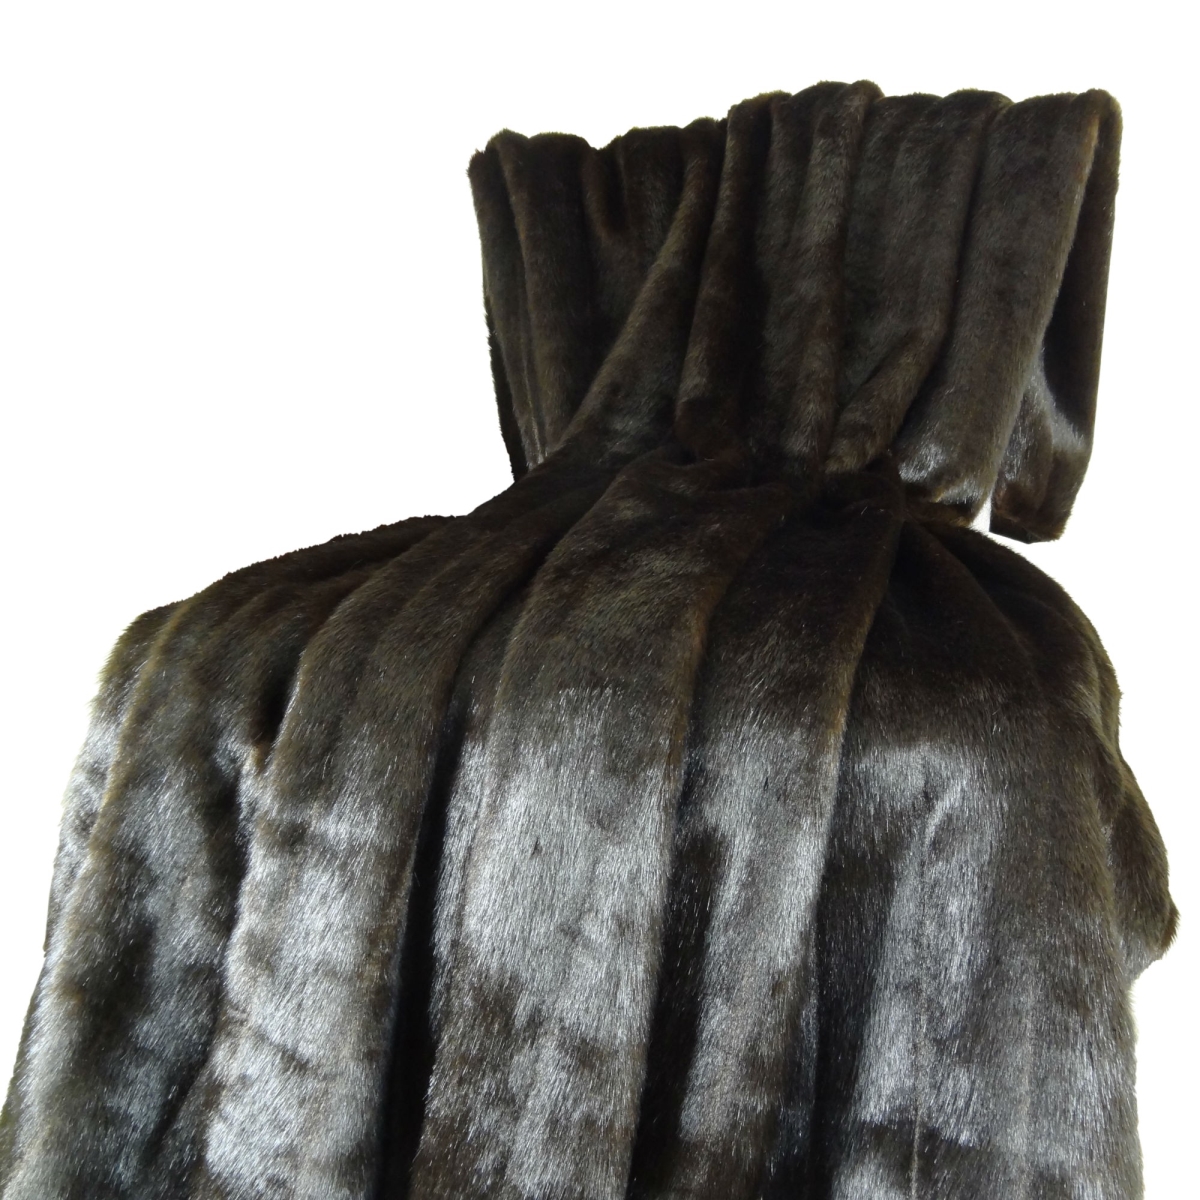 Pb16425-108x90t Tip Dyed Brown Faux Mink Fur Handmade Blanket, Dark & Brown - 108 X 90 In.